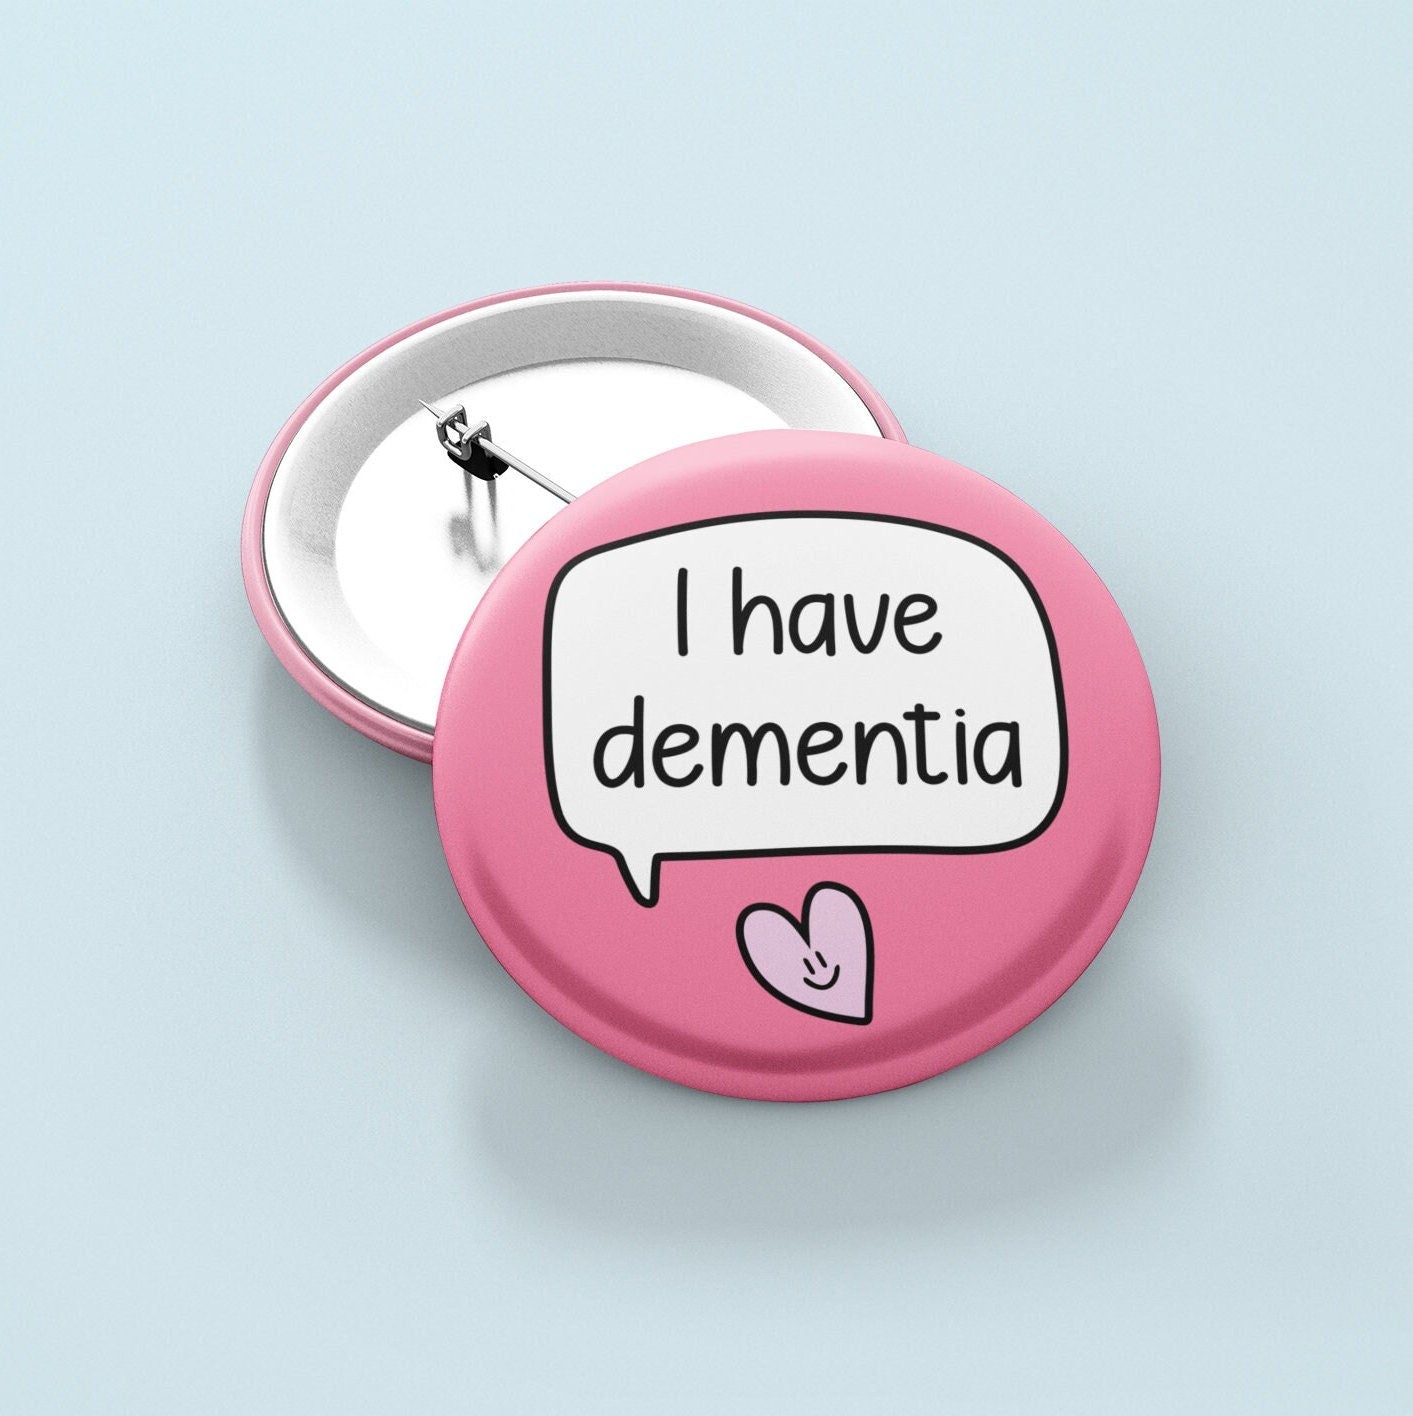 I Have Dementia - Badge Pin | Dementia Awareness